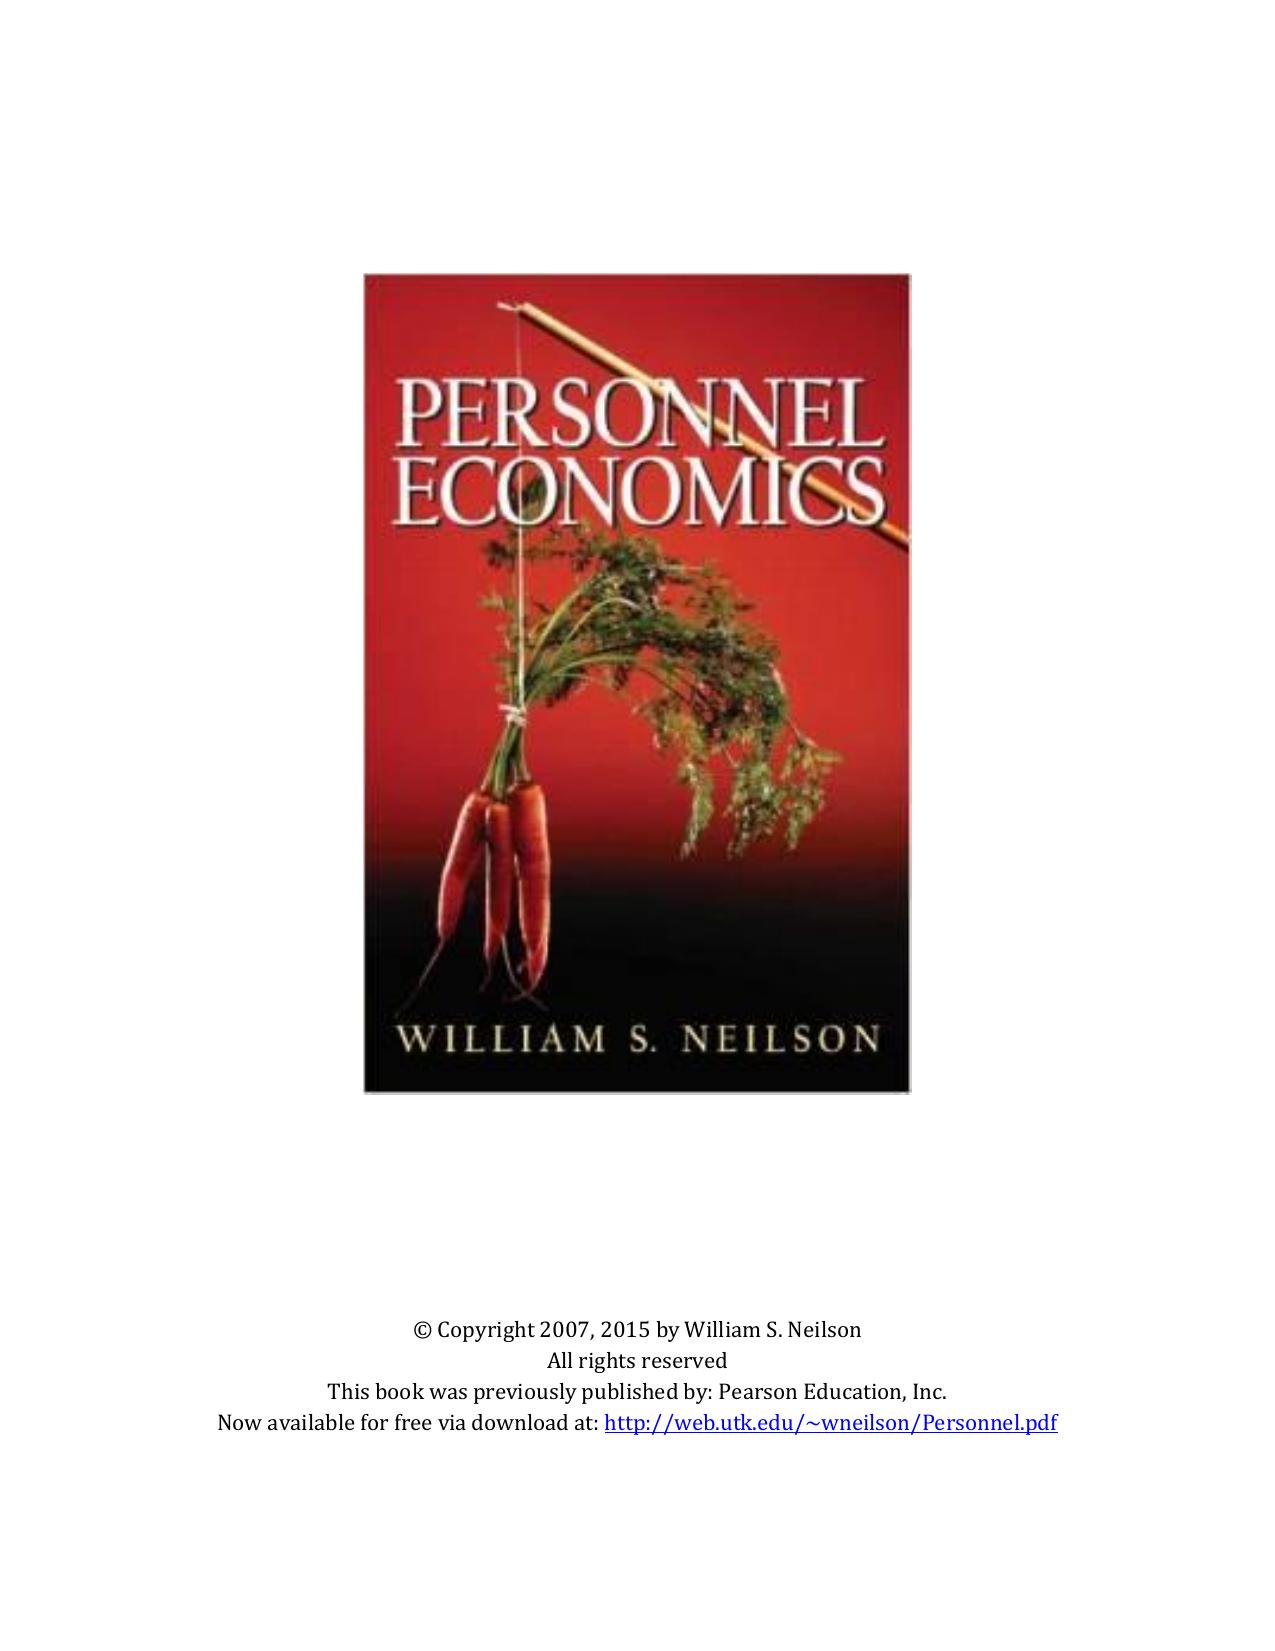 PERSONNEL ECONOMICS 2015